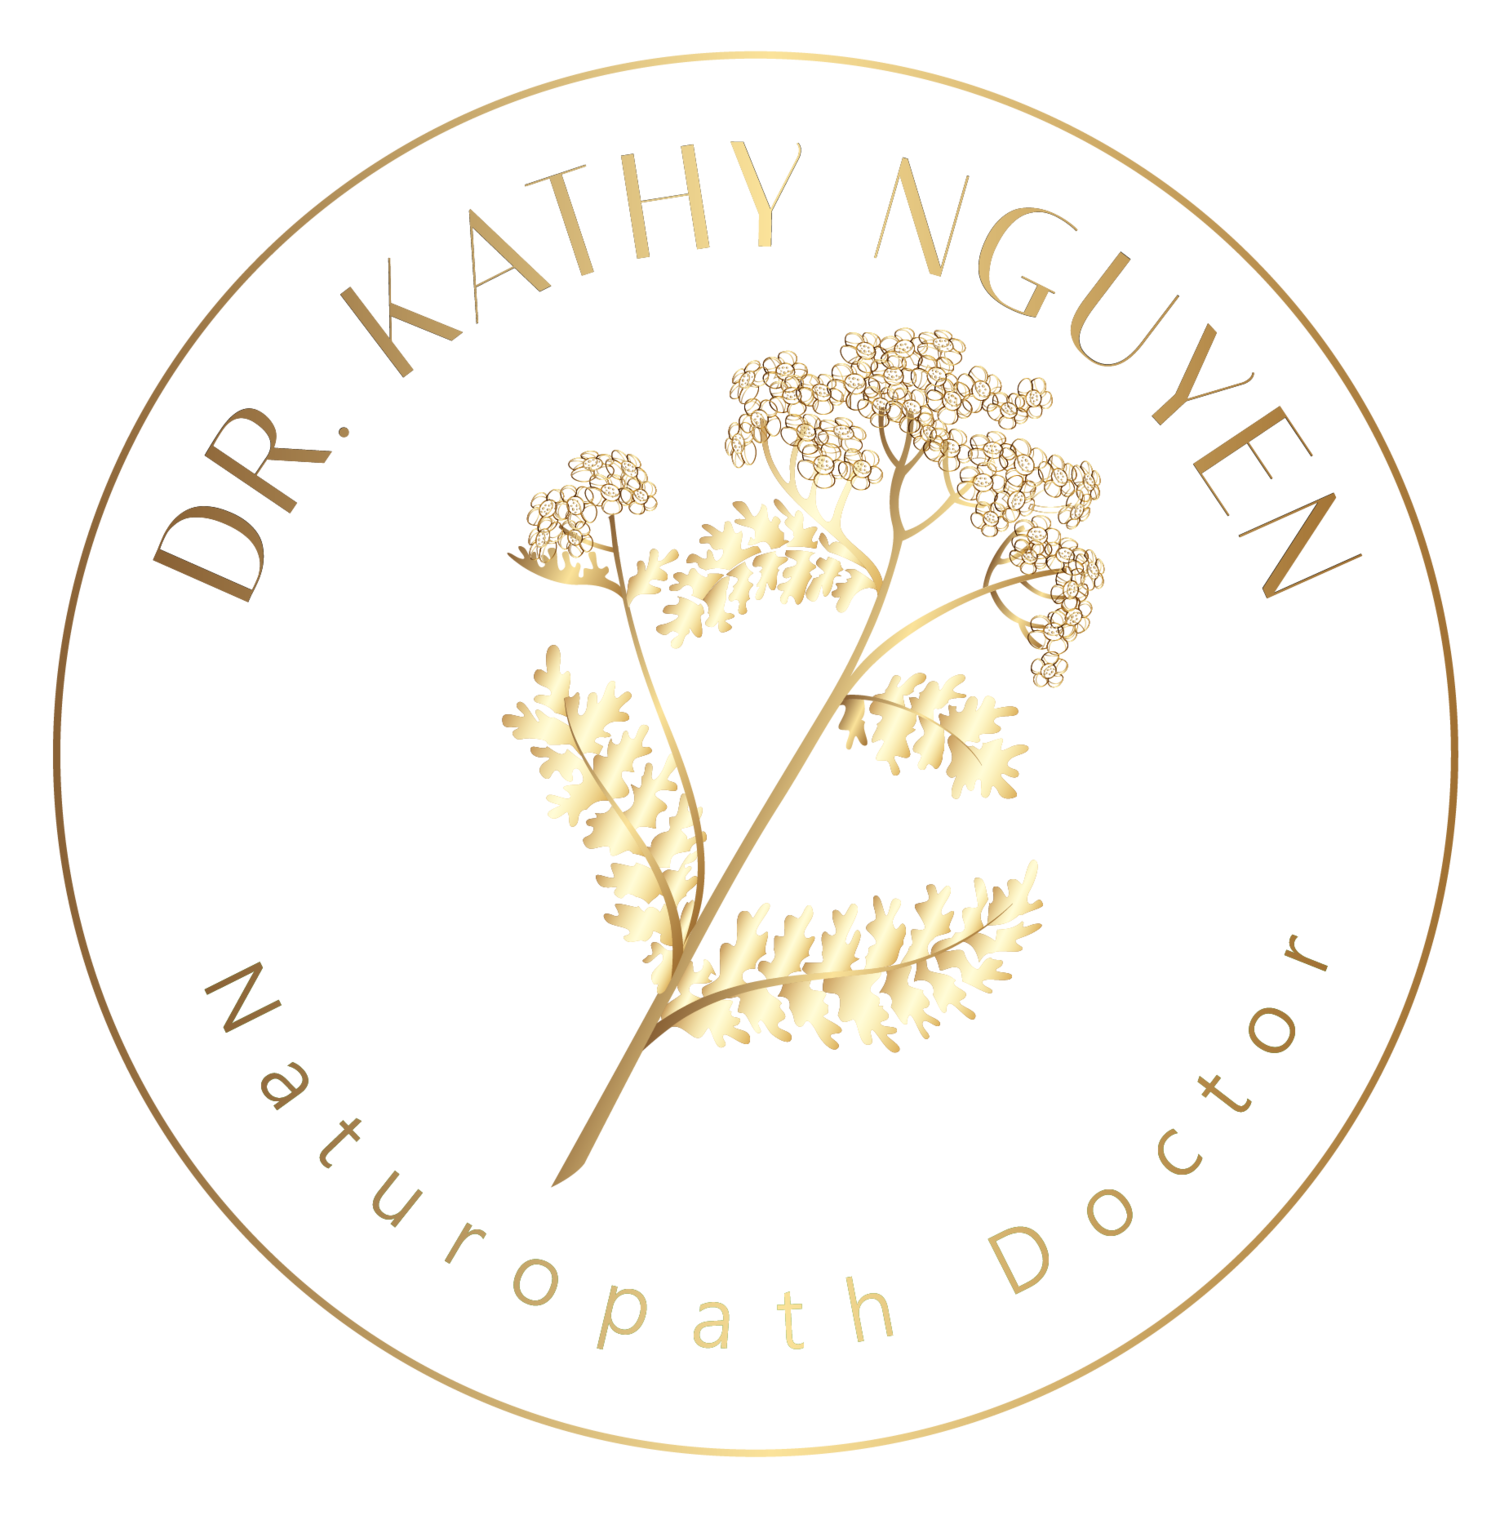 Dr. Kathy Nguyen